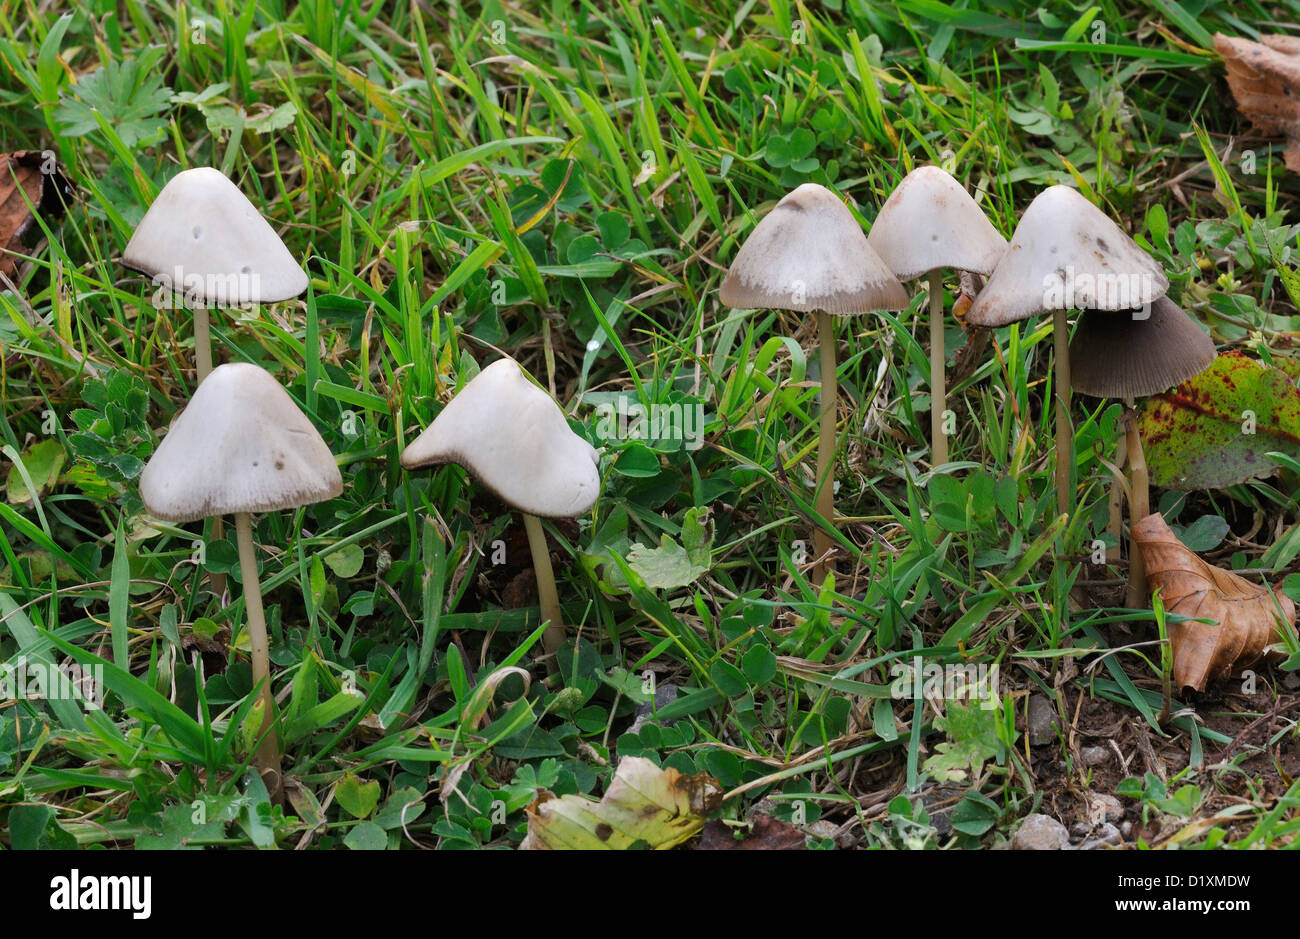 Conical Brittlestem Fungi - Psathyrella conopilus Stock Photo